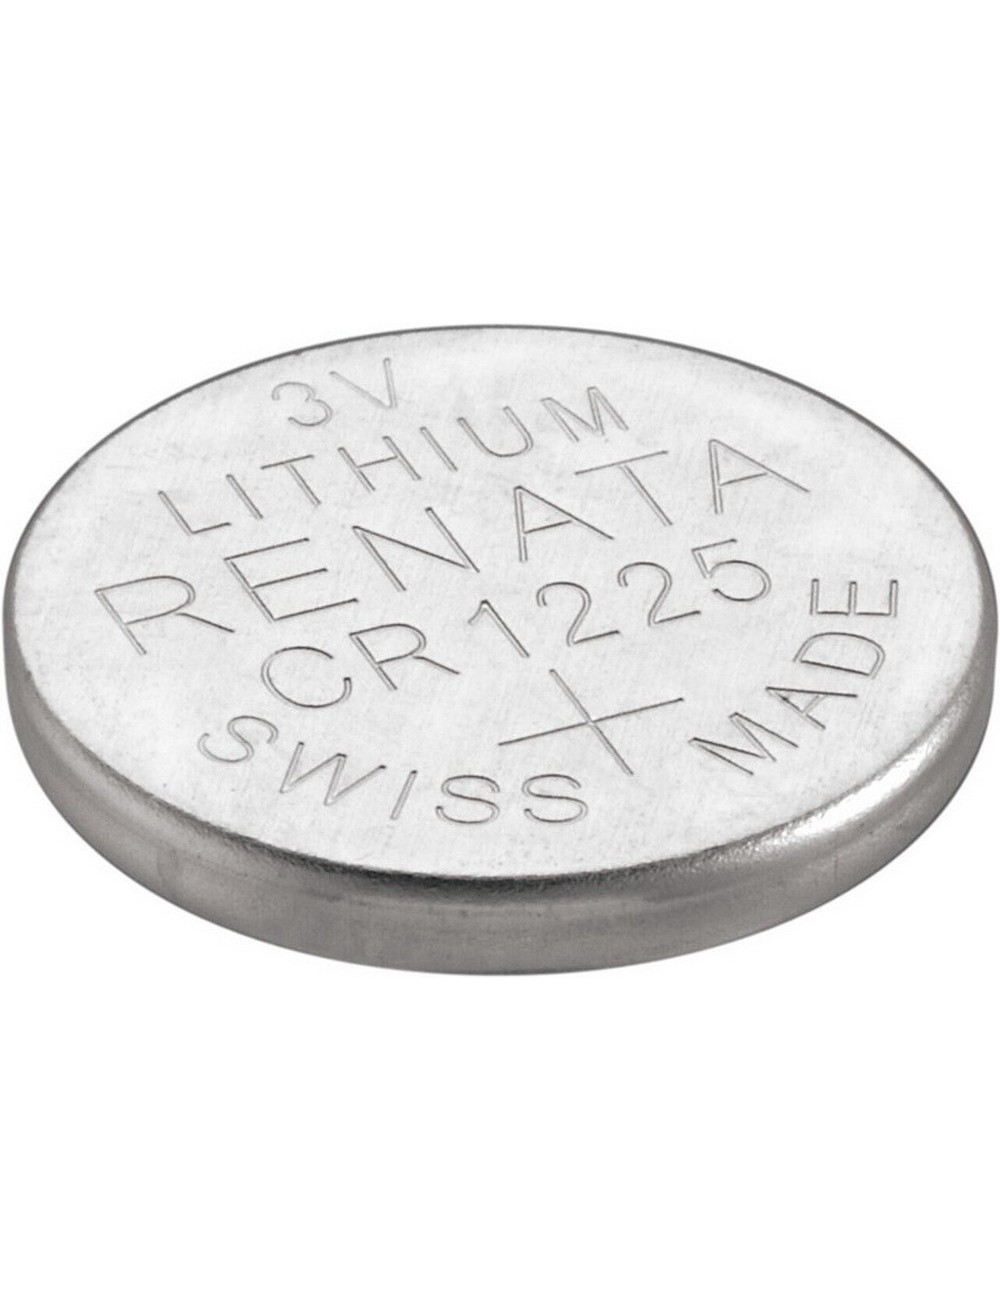 Lithium coin cell CR1225 3V 48mAh (Renata)